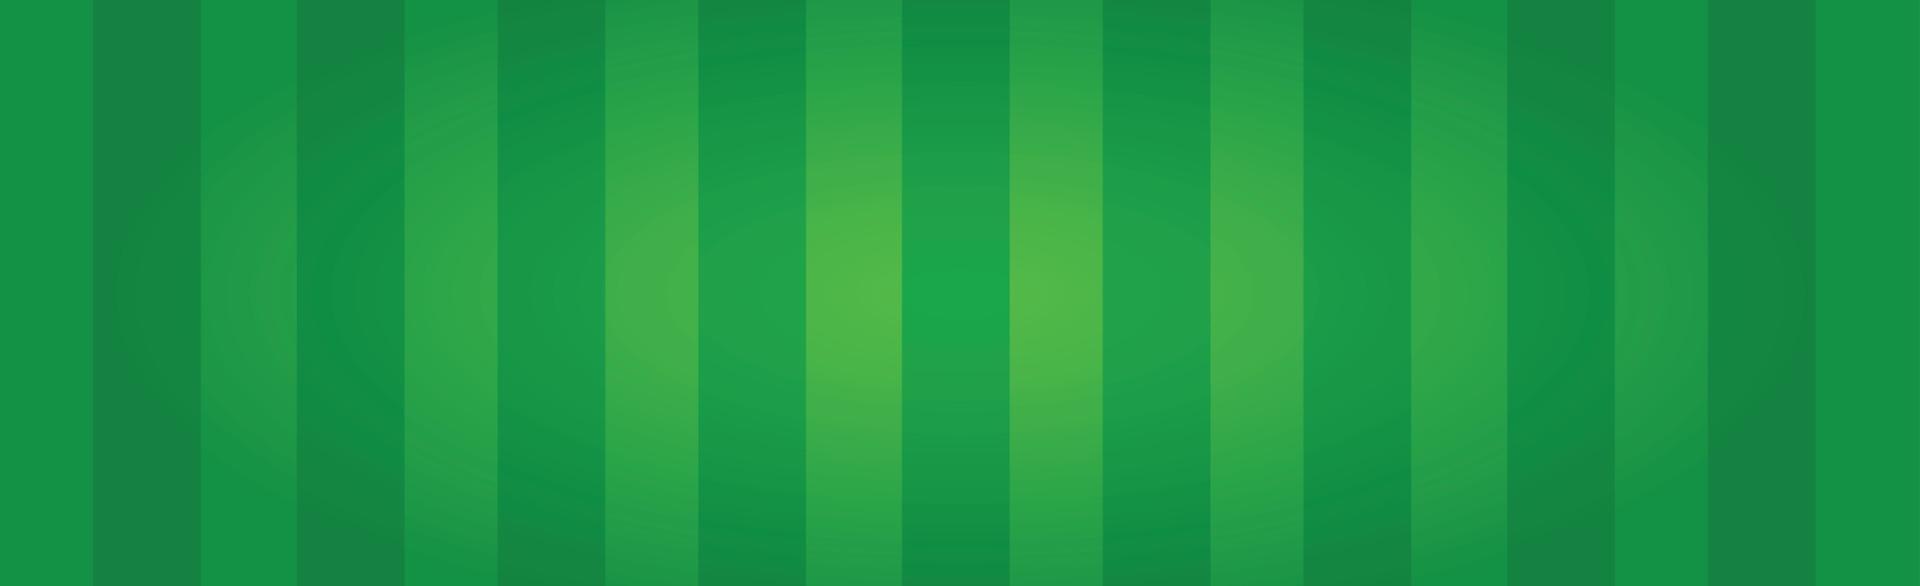 terrain de football vert réaliste avec des lignes verticales - vecteur